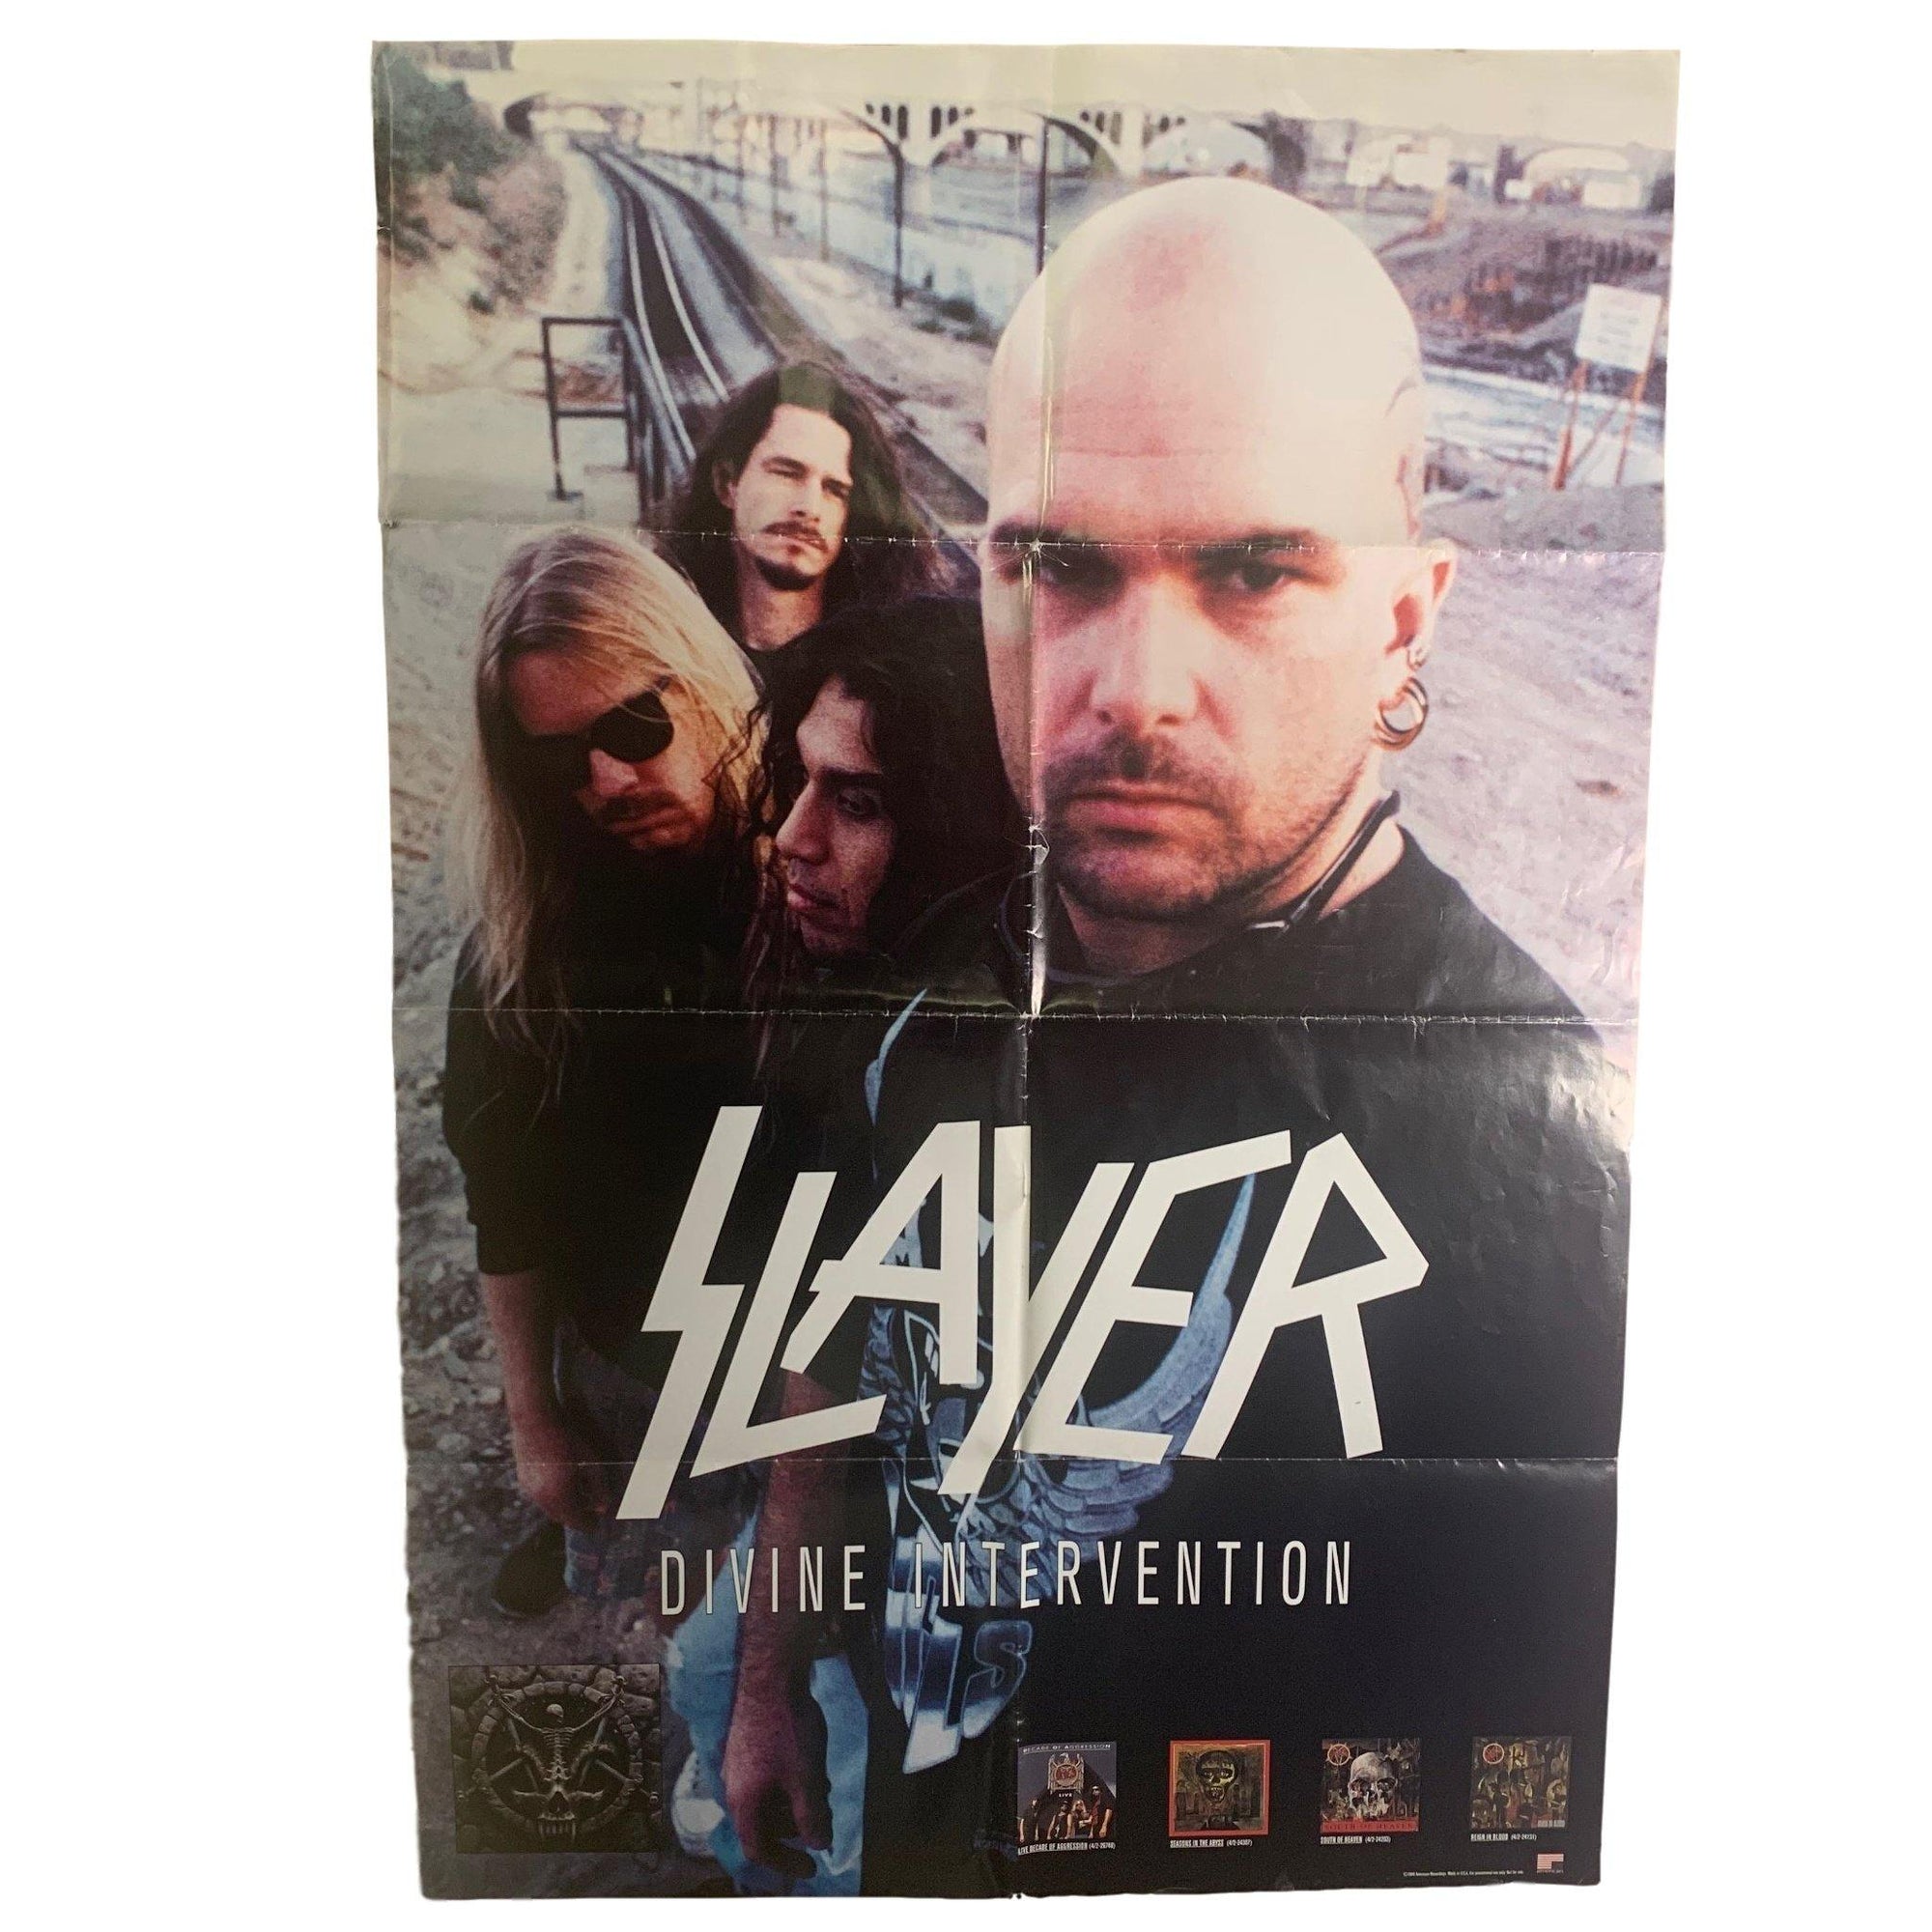 Vintage Slayer "Divine Intervention" Promotional Poster - jointcustodydc